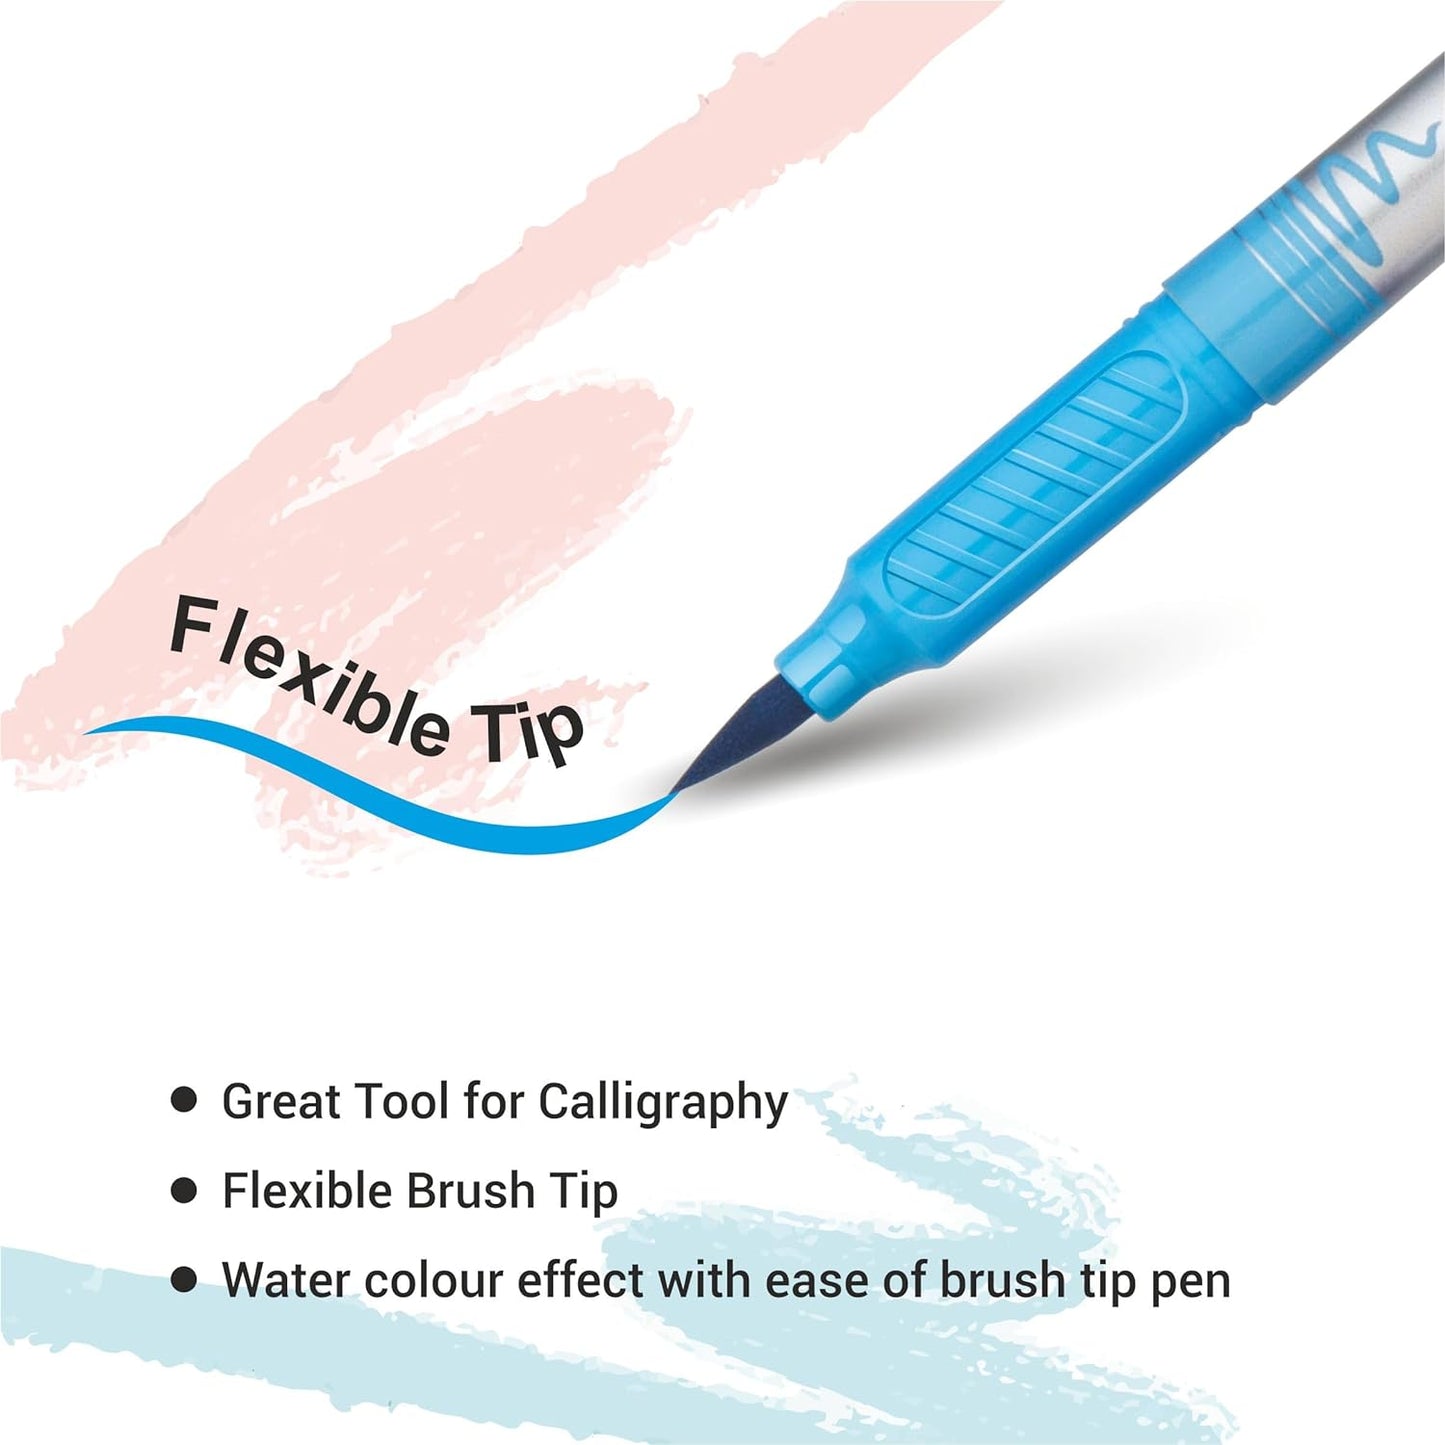 Flair Creative Brush Pens - Fine Tip - 12 Multicolour Shades